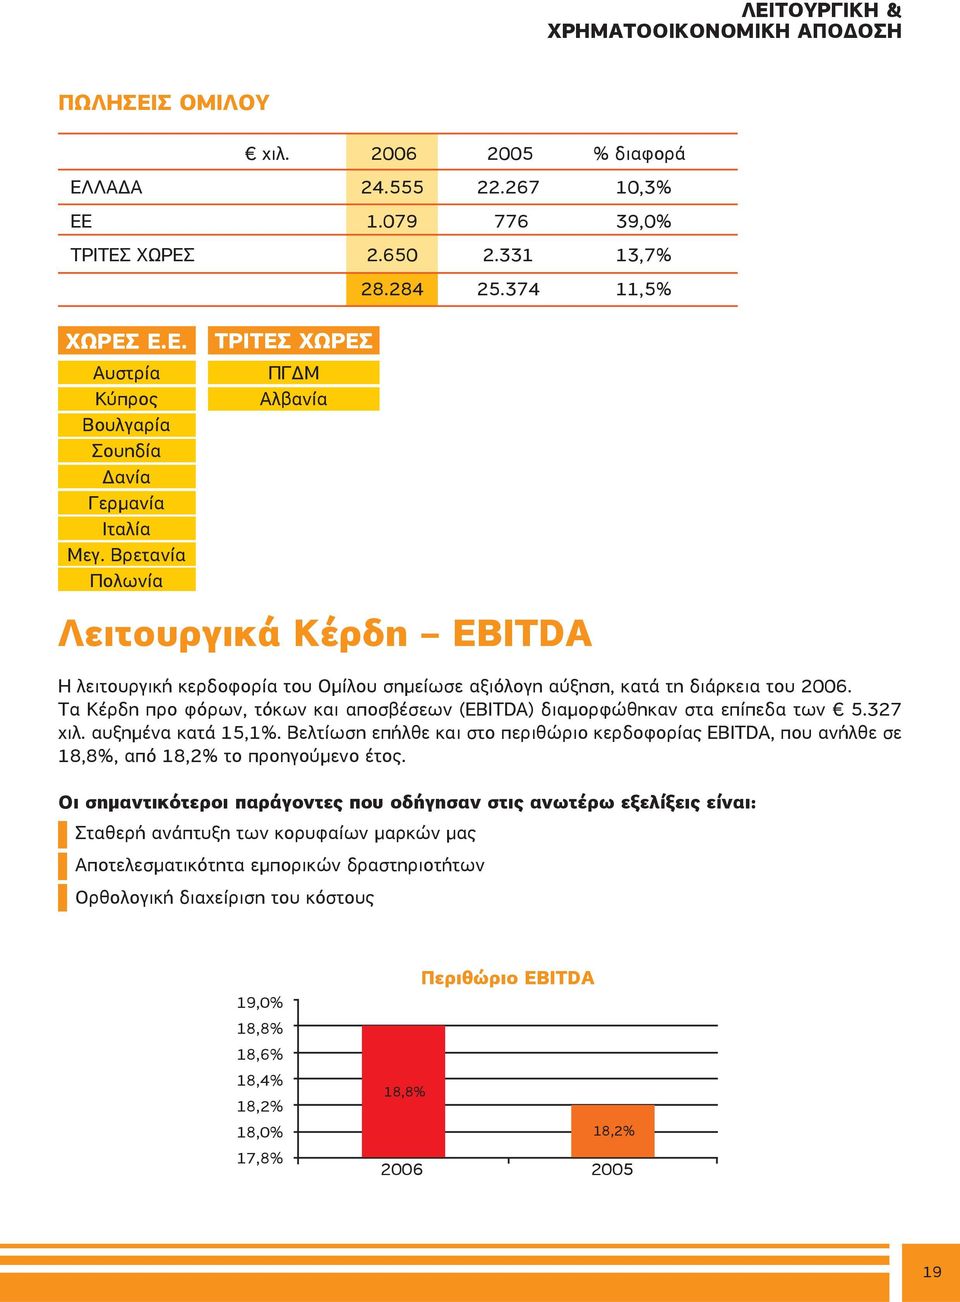 Τα Κέρδη προ φόρων, τόκων και αποσβέσεων (EBITDA) διαμορφώθηκαν στα επίπεδα των 5.327 χιλ. αυξημένα κατά 15,1%.